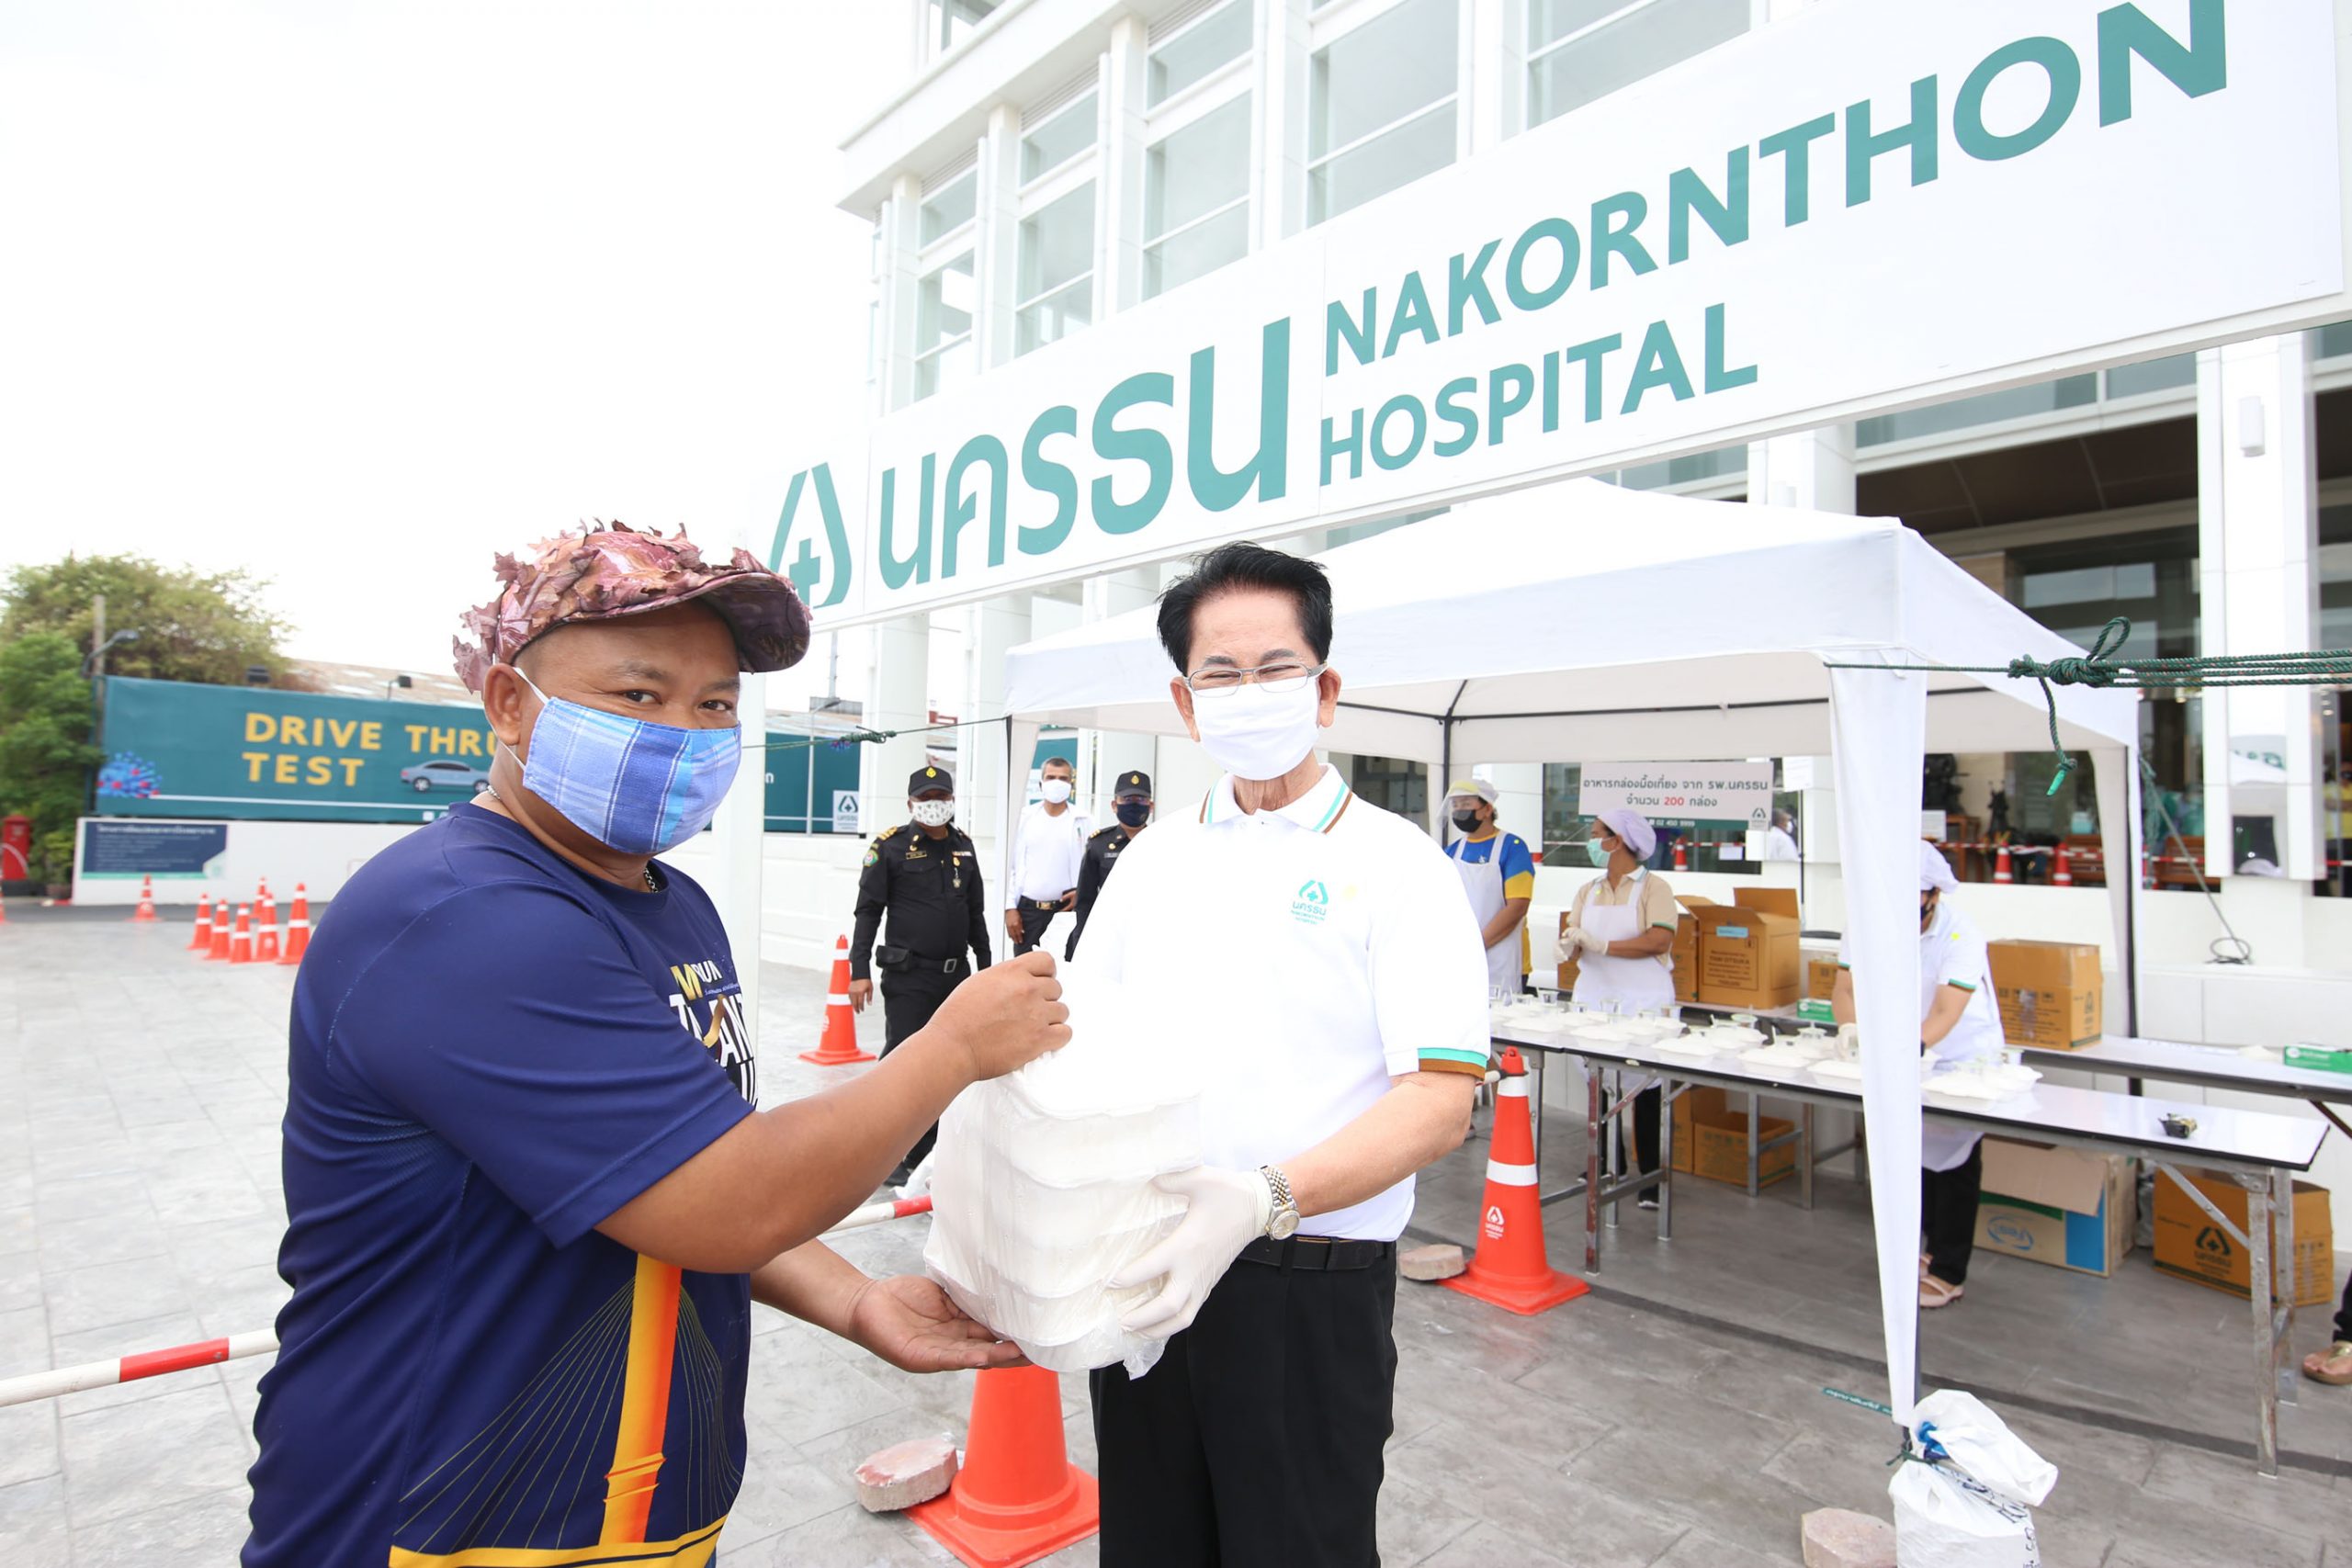 ภาพข่าว: โรงพยาบาลนครธน แจกข้าวกล่องฟรี ช่วยเหลือคนไทยที่ได้รับผลกระทบจากวิกฤตโควิด-19